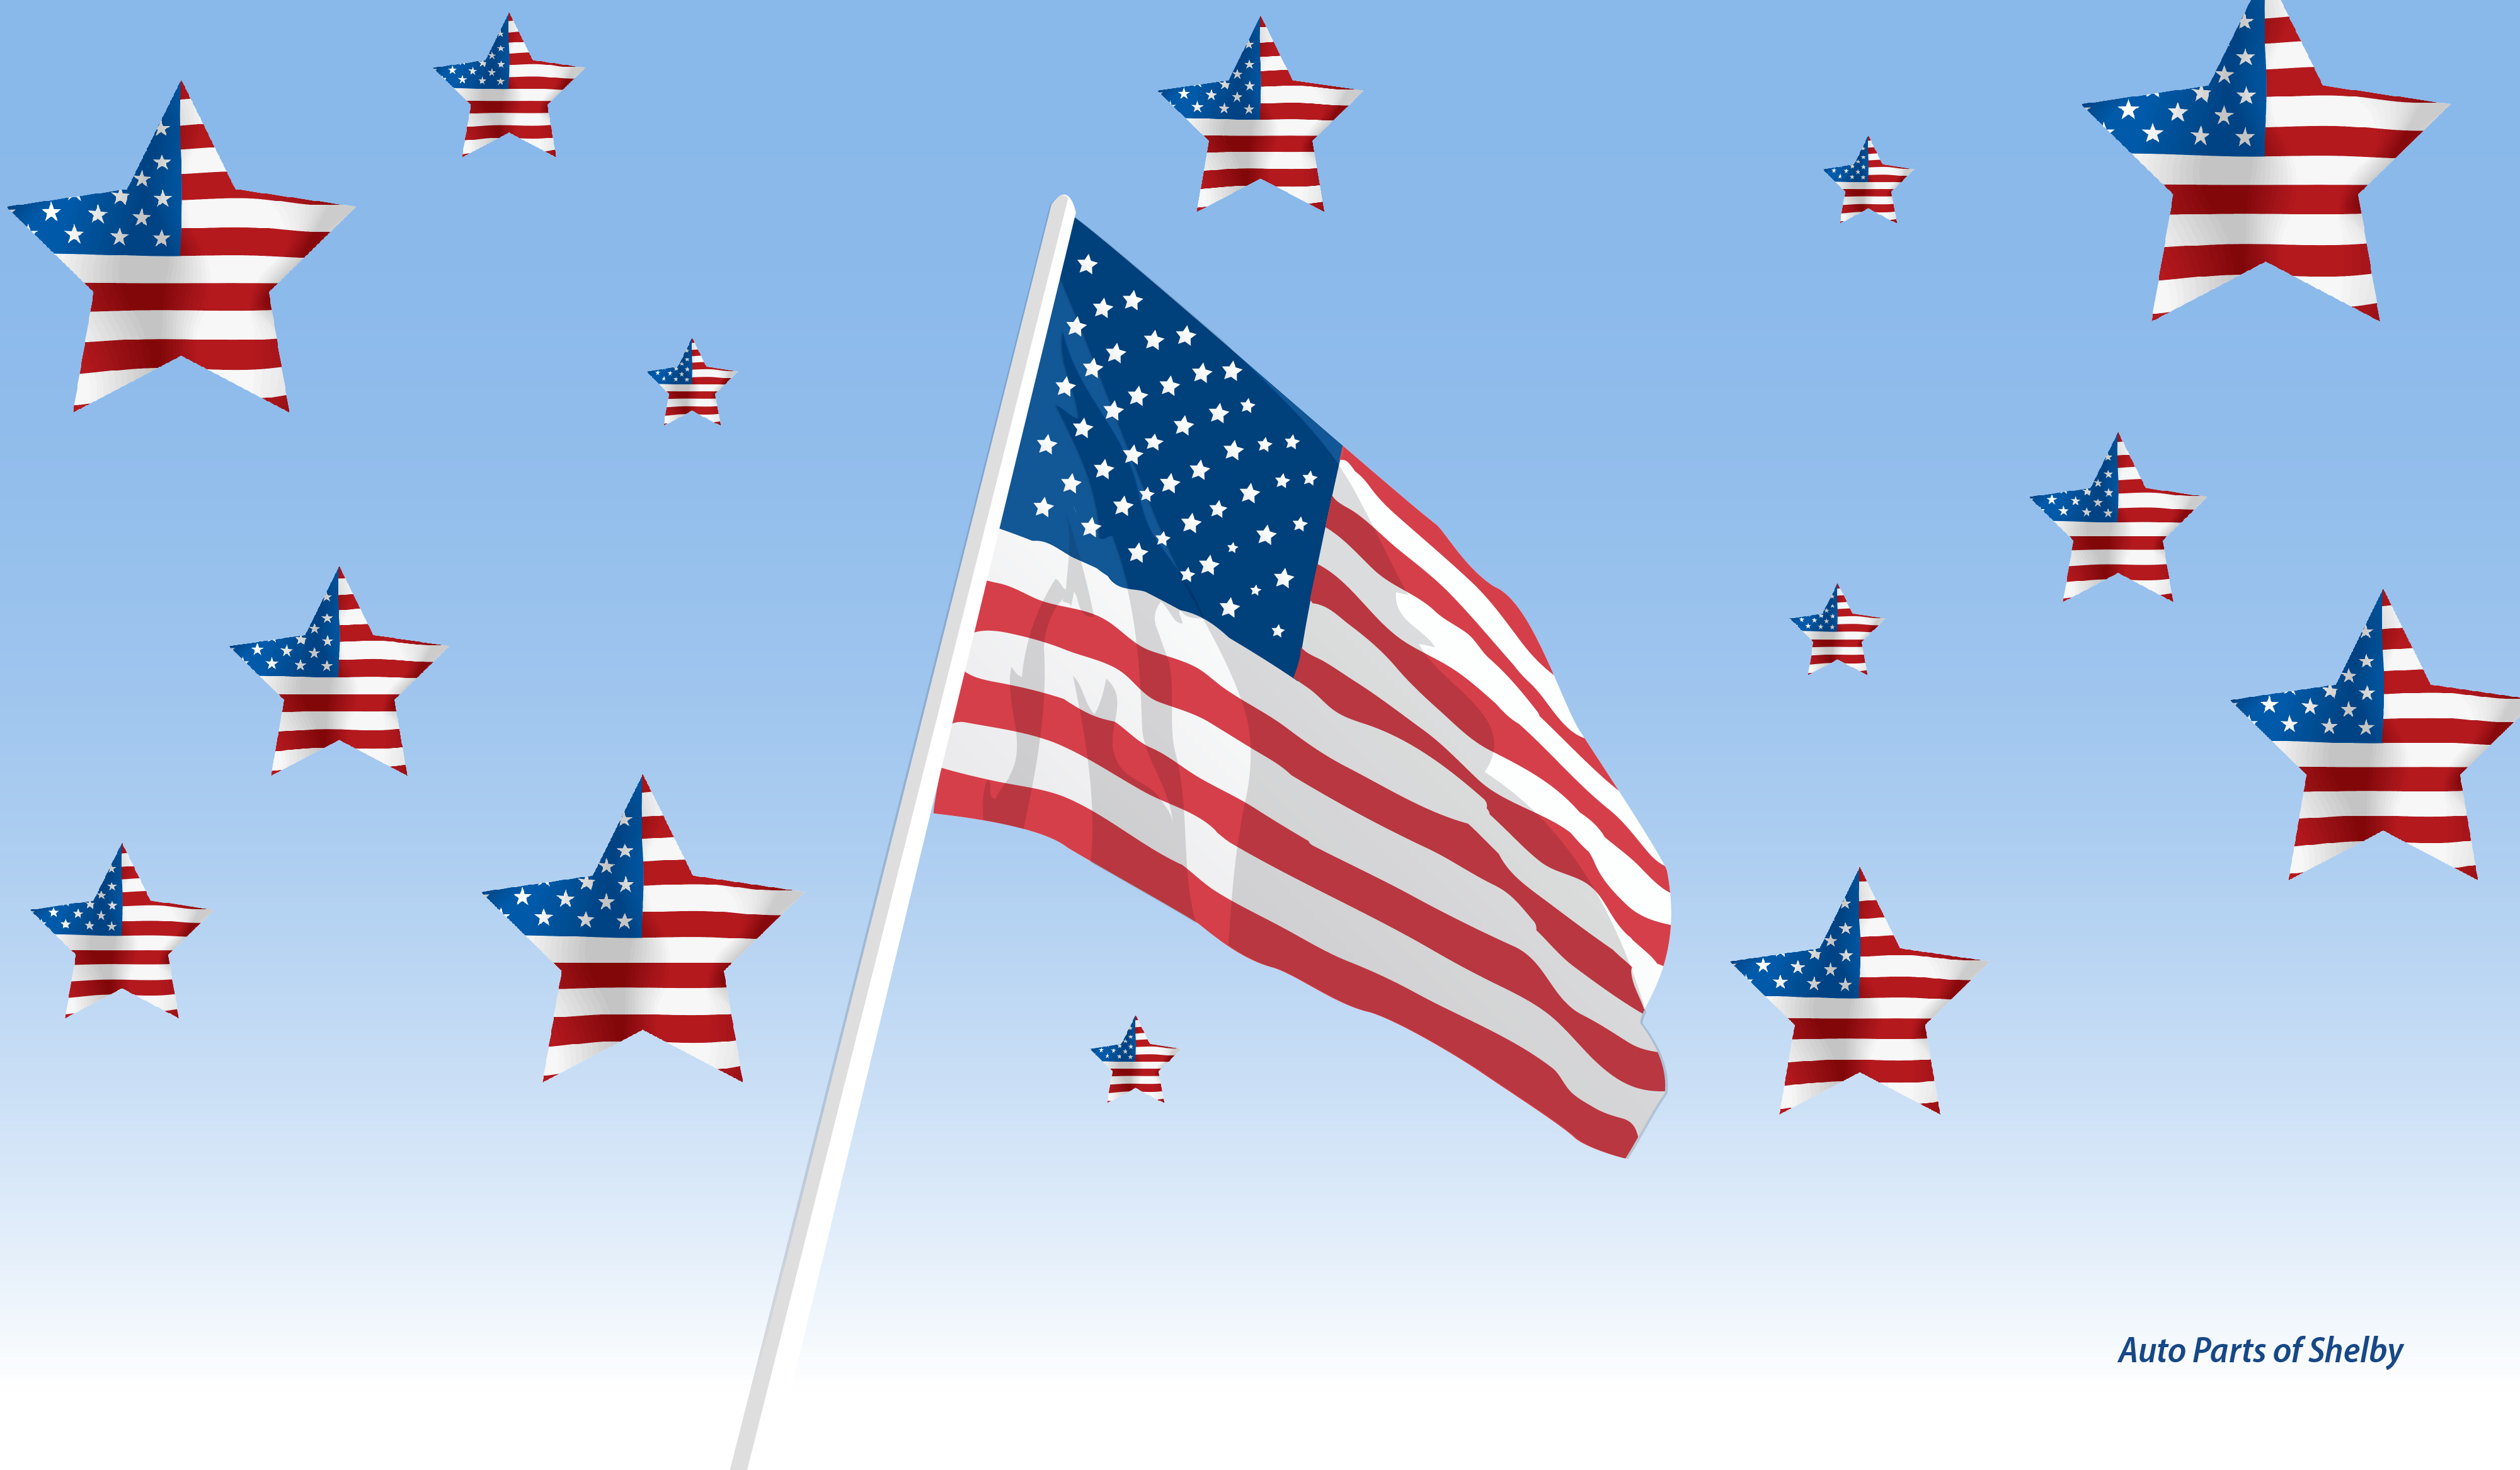 Free Patriotic Wallpaper For Desktop - Free Memorial Day Desktop Backgrounds , HD Wallpaper & Backgrounds